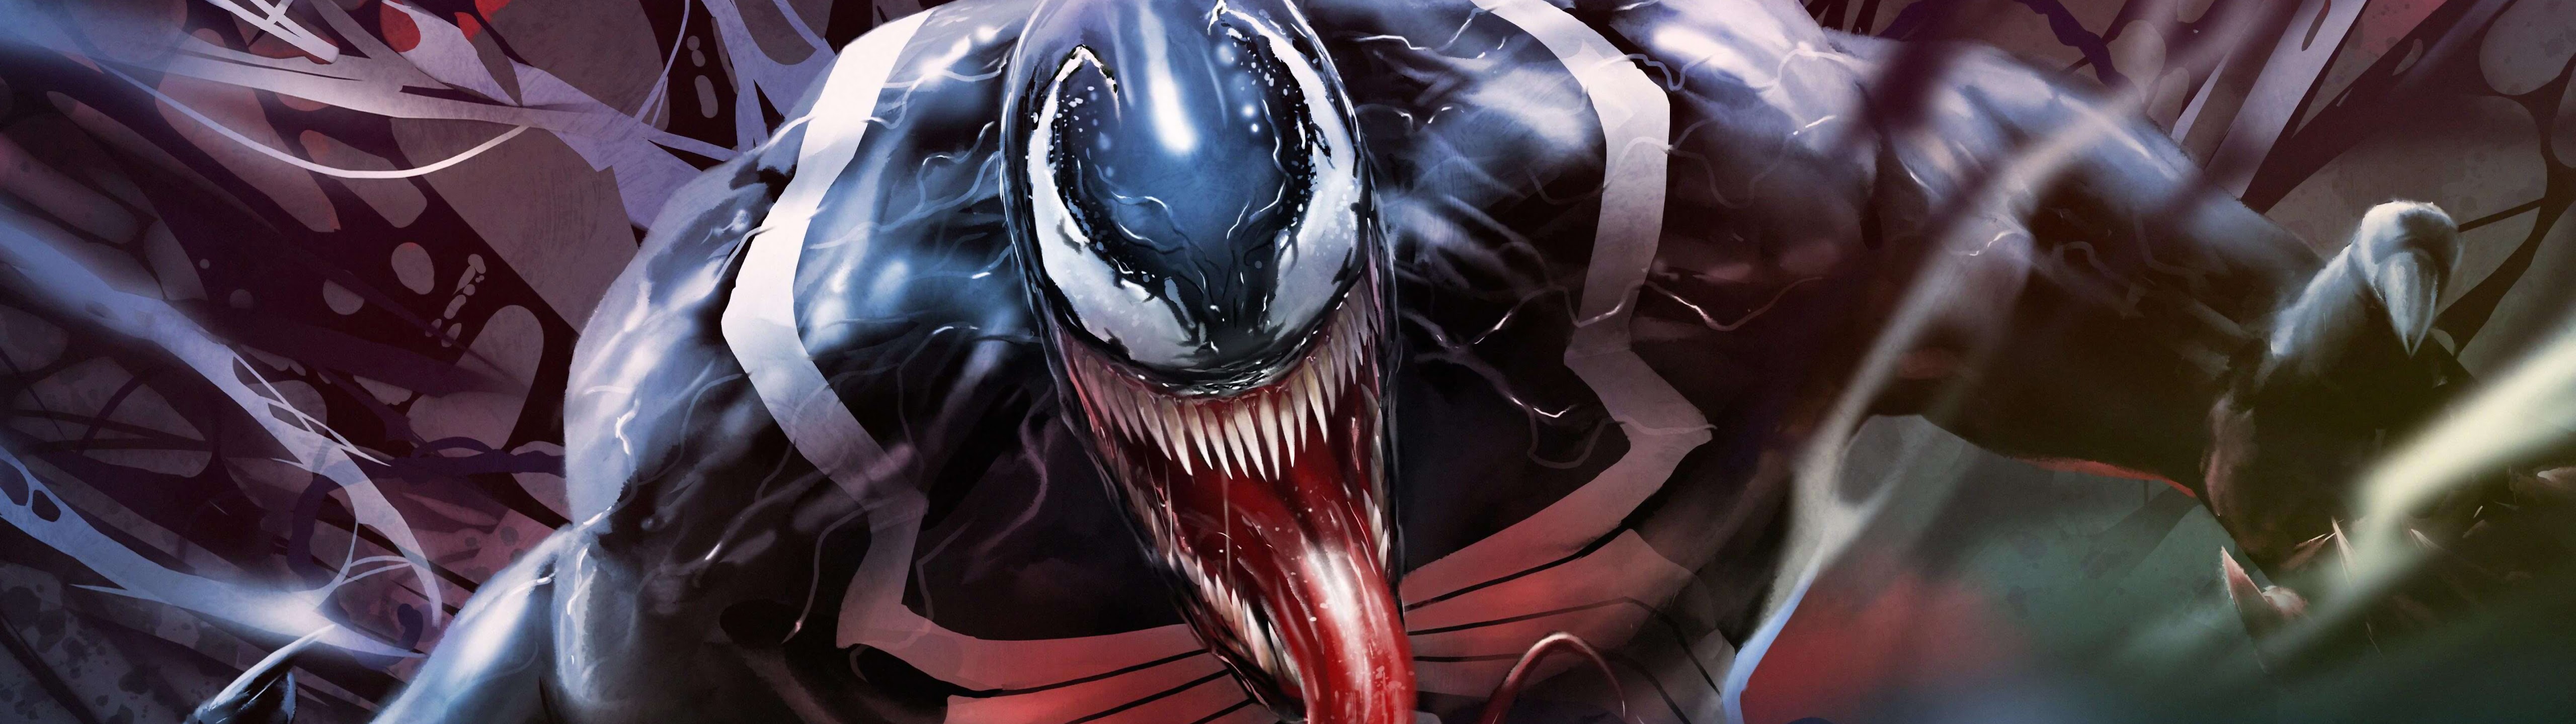 Thật tuyệt vời khi được sở hữu hình nền Venom 8K #132 - một cơn sốt mới cho các fan của siêu anh hùng. Hãy trang trí cho chiếc điện thoại của bạn với những hình ảnh đầy sức mạnh của Venom và cùng trải nghiệm những phút giây đầy kịch tính của bộ phim.